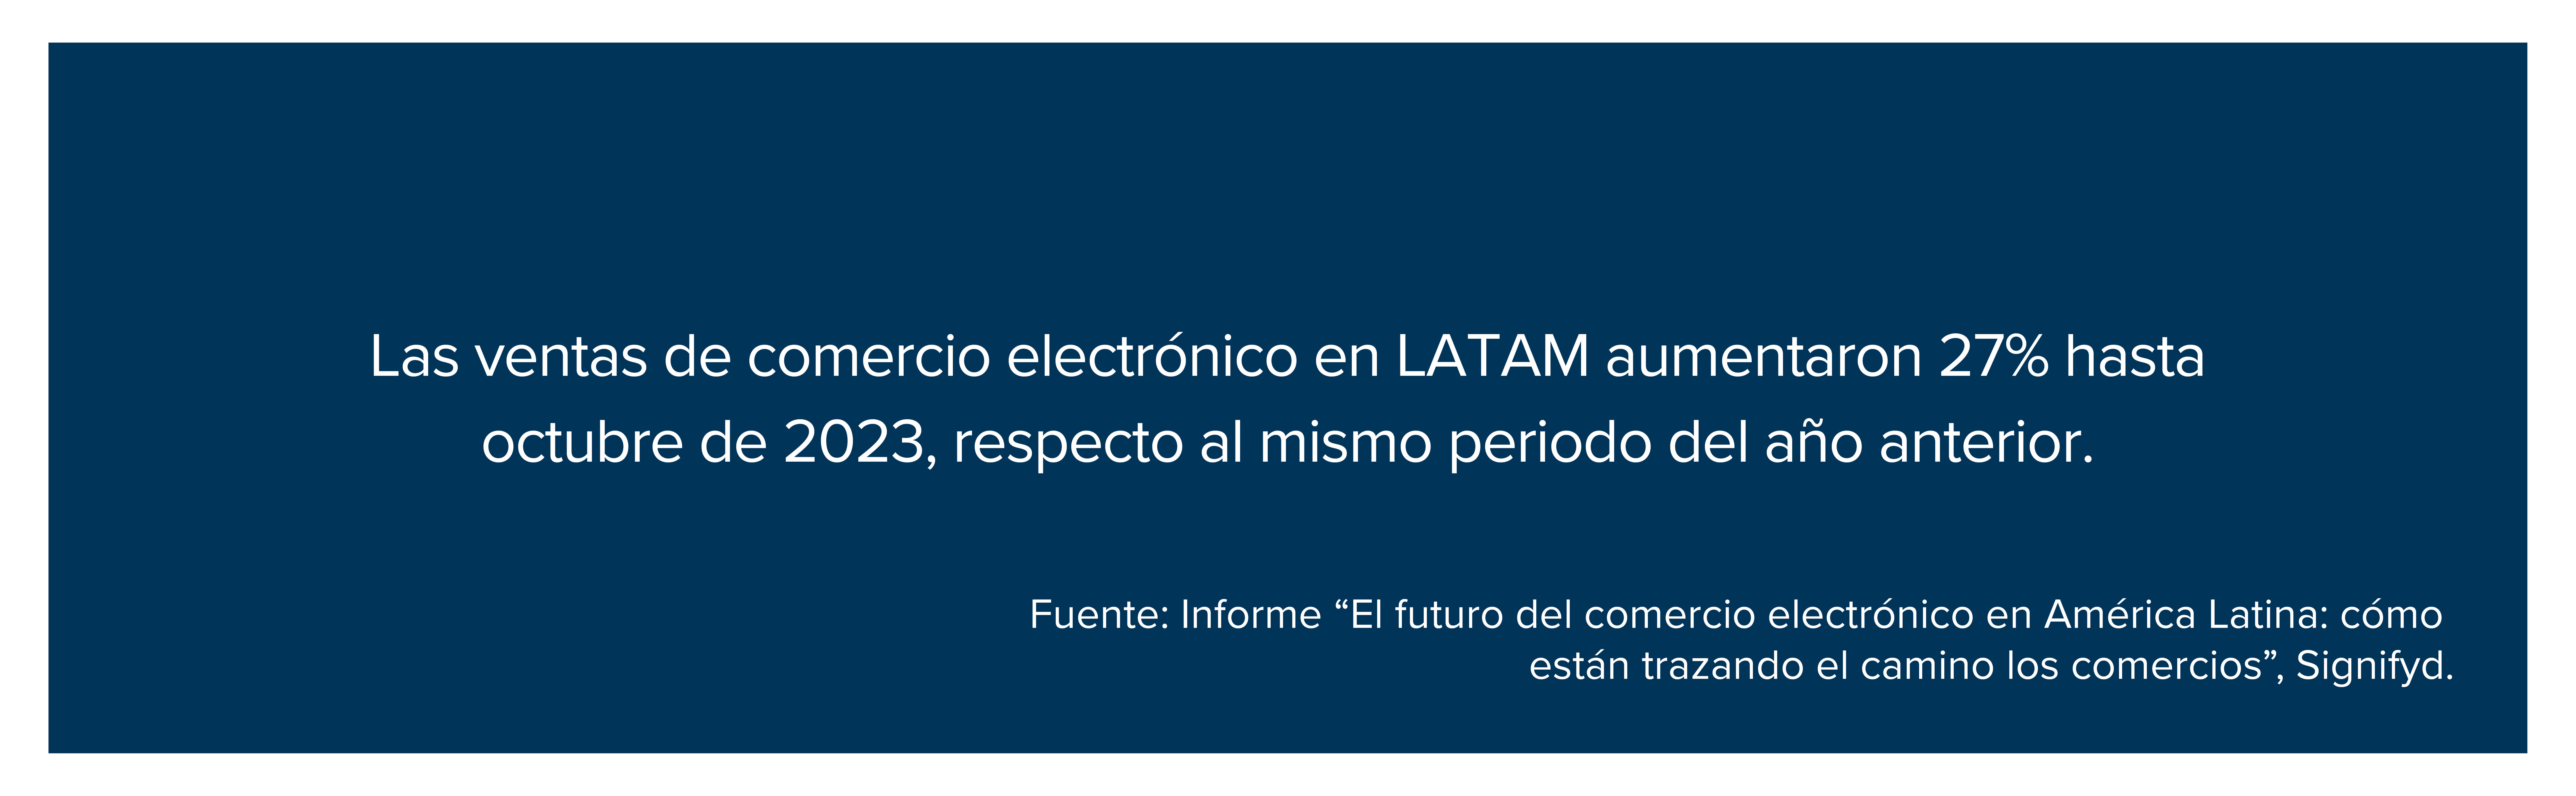 Las ventas de comercio electrónico en LATAM aumentaron 27% hasta octubre de 2023, respecto al mismo periodo del año anterior.